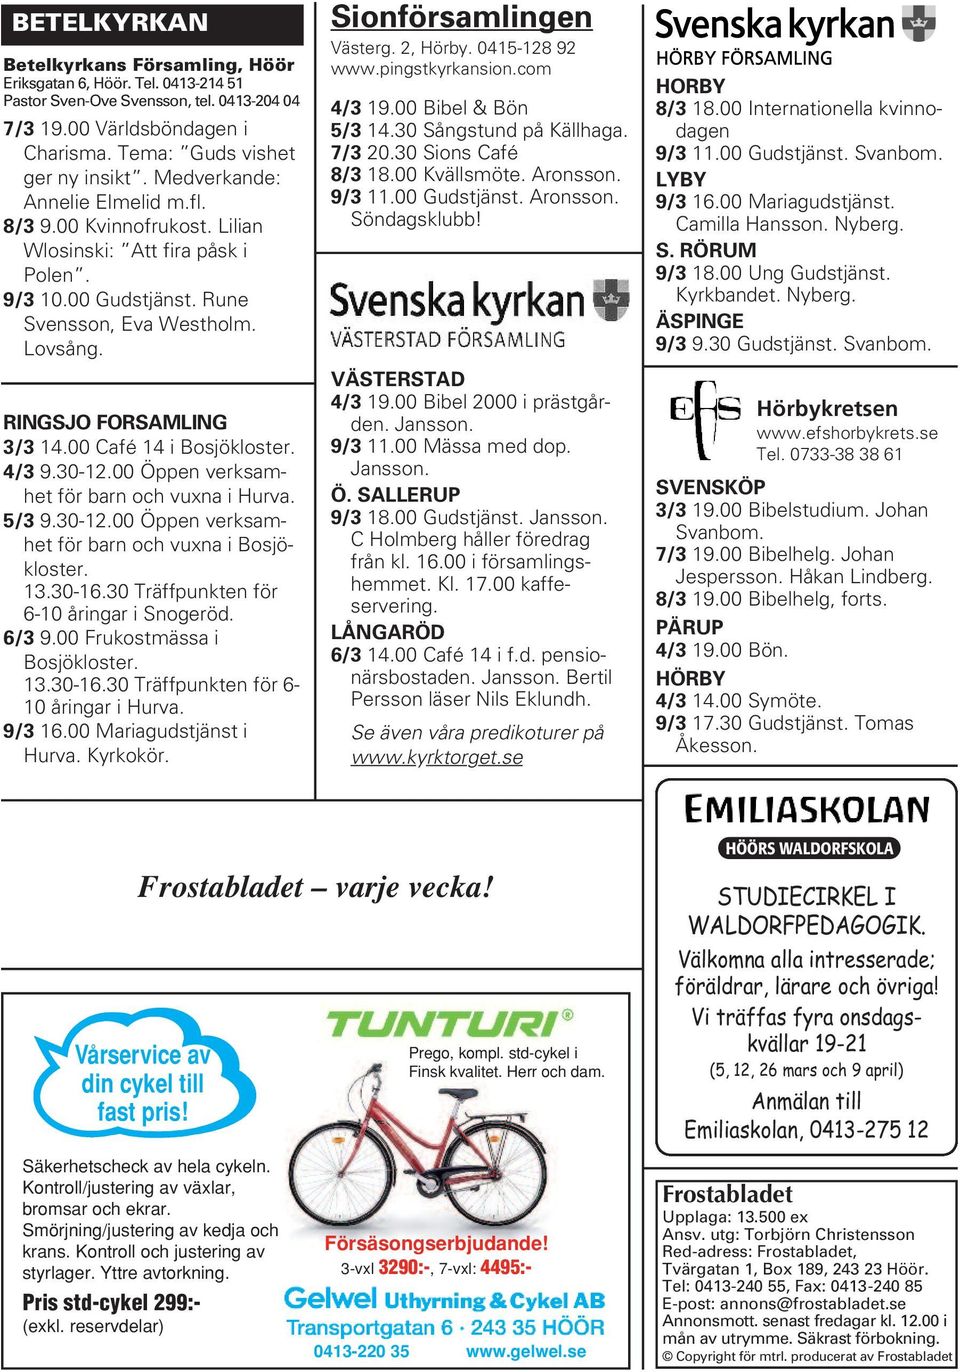 00 Café 14 i Bosjökloster. 4/3 9.30-12.00 Öppen verksamhet för barn och vuxna i Hurva. 5/3 9.30-12.00 Öppen verksamhet för barn och vuxna i Bosjökloster. 13.30-16.